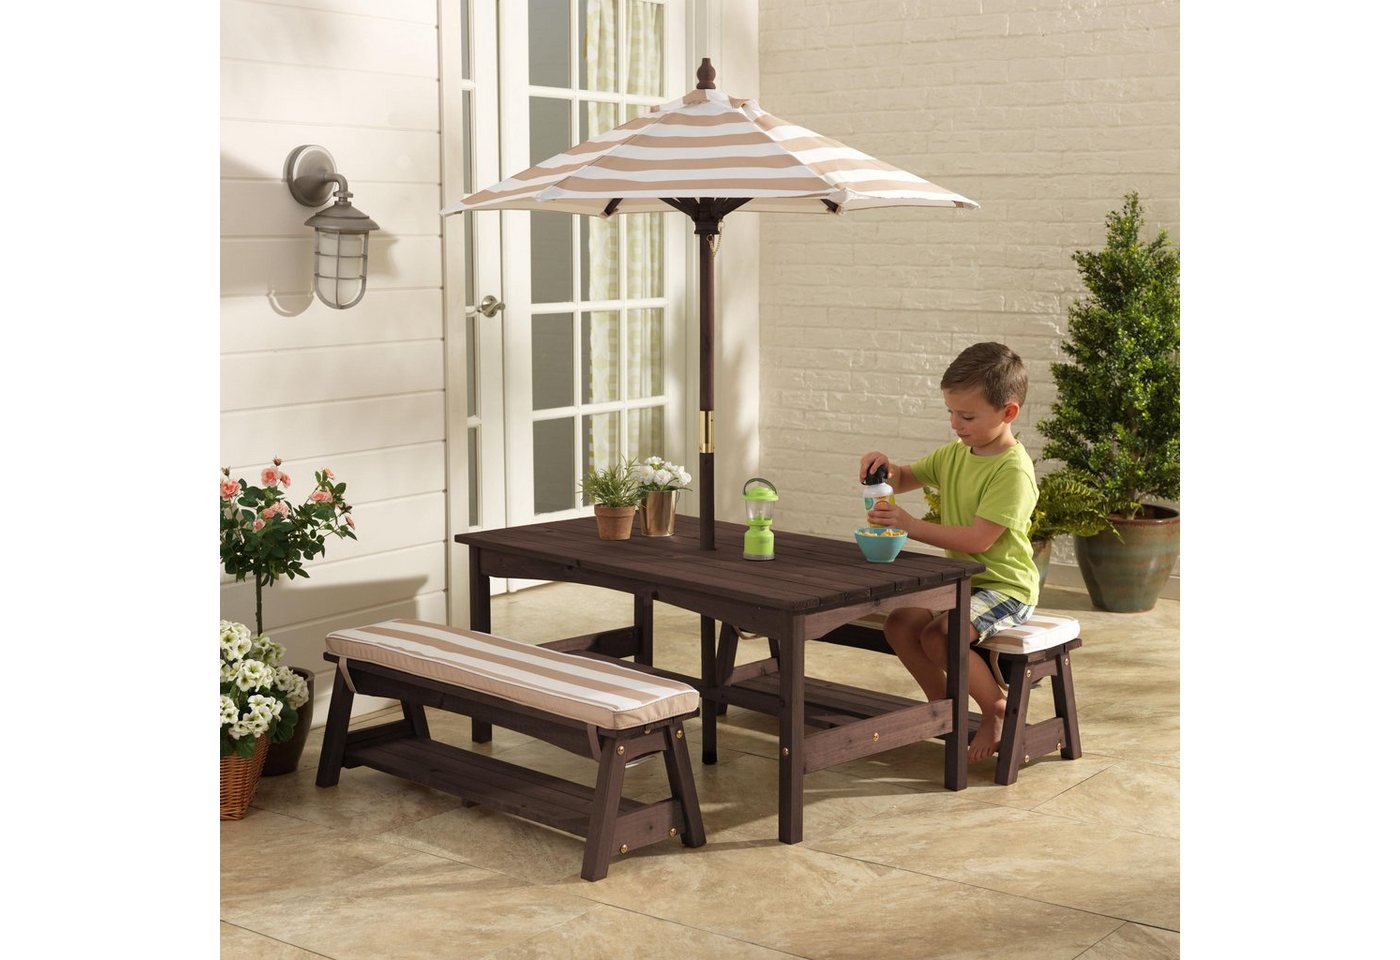 KidKraft® Kindersitzgruppe »Gartentischset dunkelbraun«, mit Sitzauflagen und Sonnenschirm, beige-weiß gestreift-HomeTrends